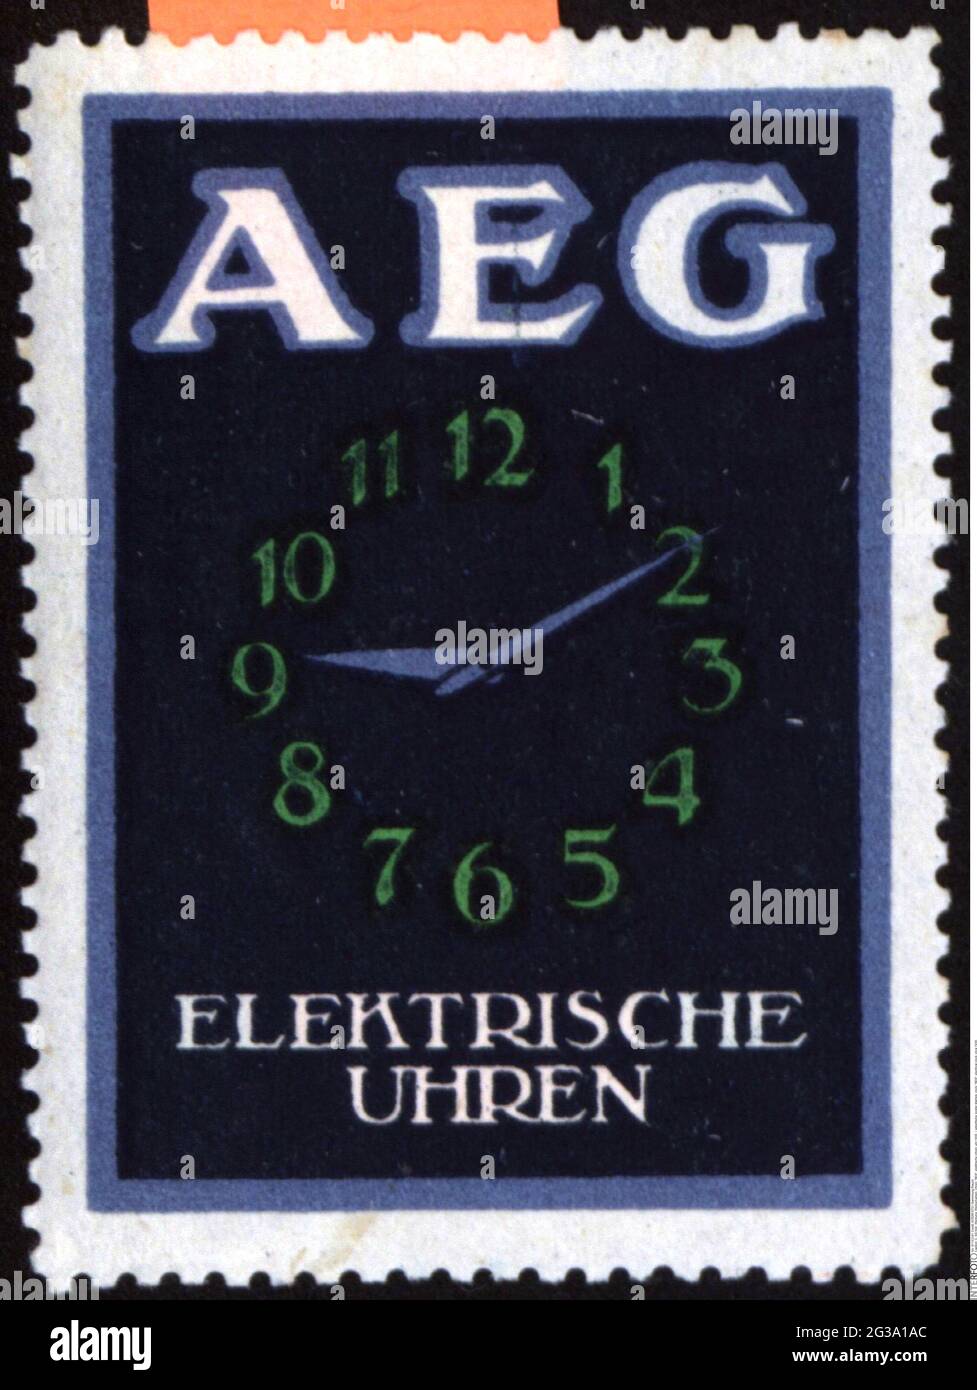 Werbung, Postermarken, Uhr, 'AEG', elektrische Uhr, CIRCA 1930, ZUSÄTZLICHE-RIGHTS-CLEARANCE-INFO-NOT-AVAILABLE Stockfoto